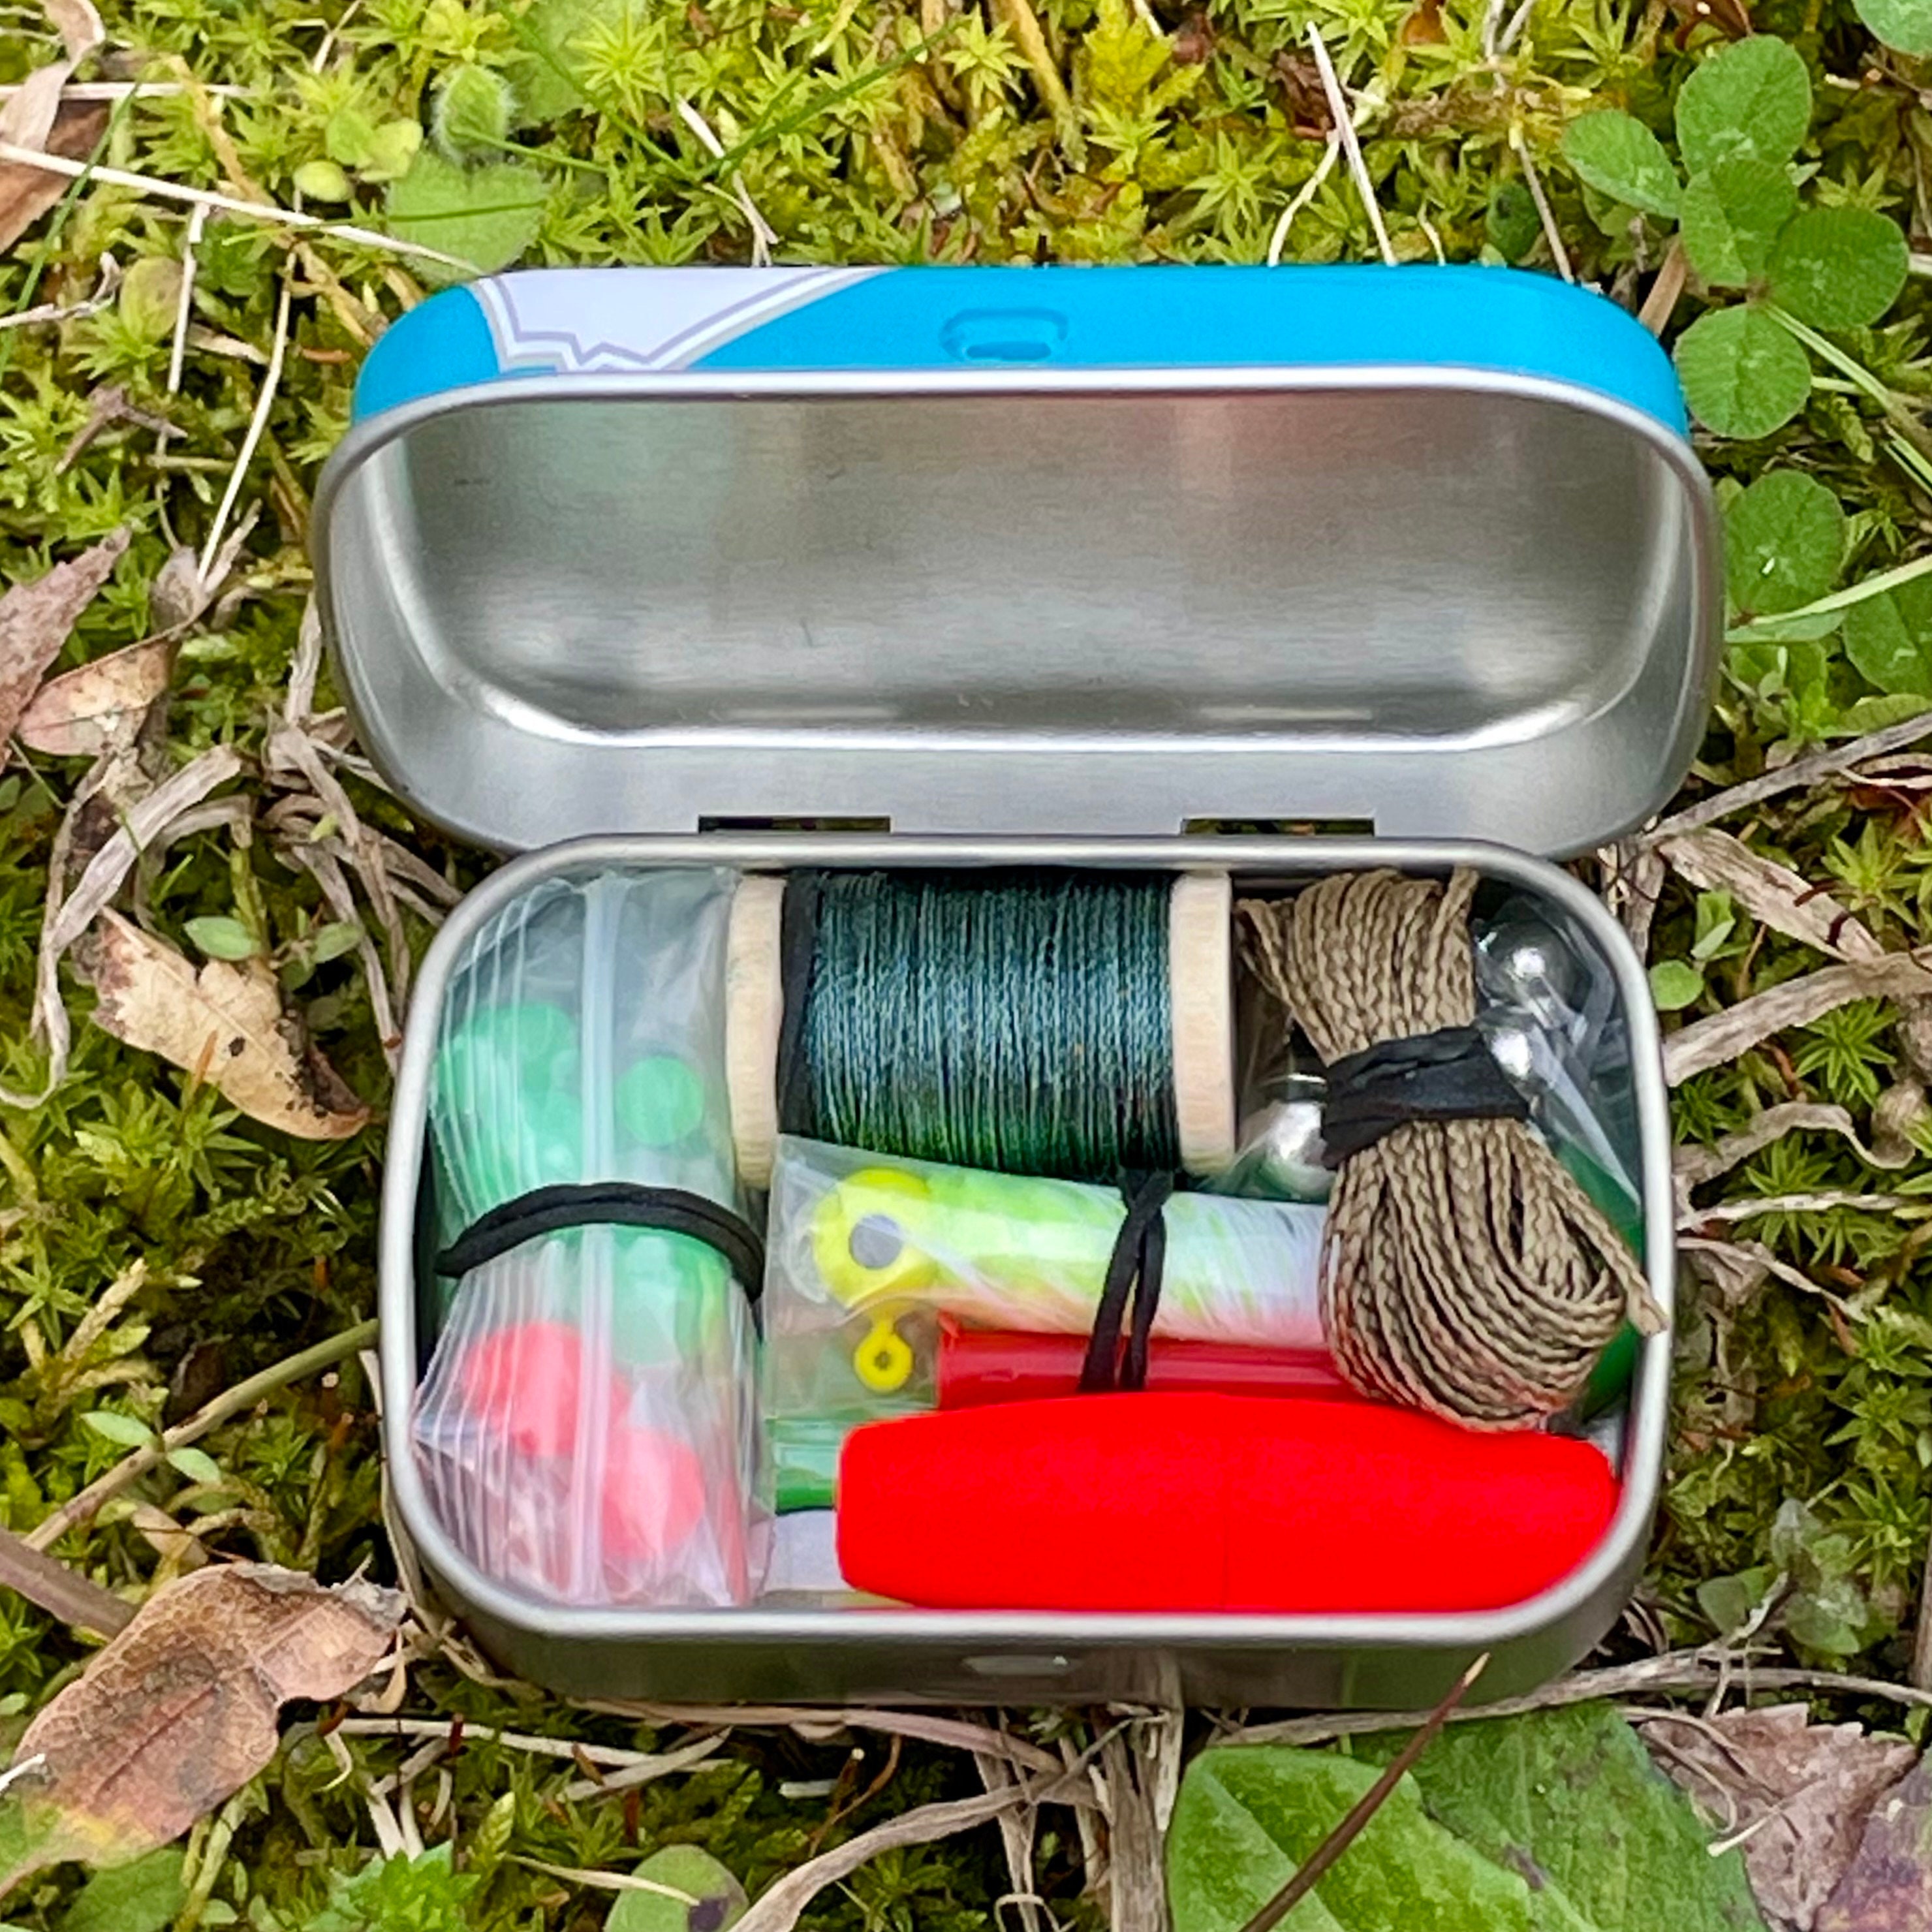 Buy 32 Pc Mini Survival Fishing Kit in Altoids Smalls Tin Online in India 